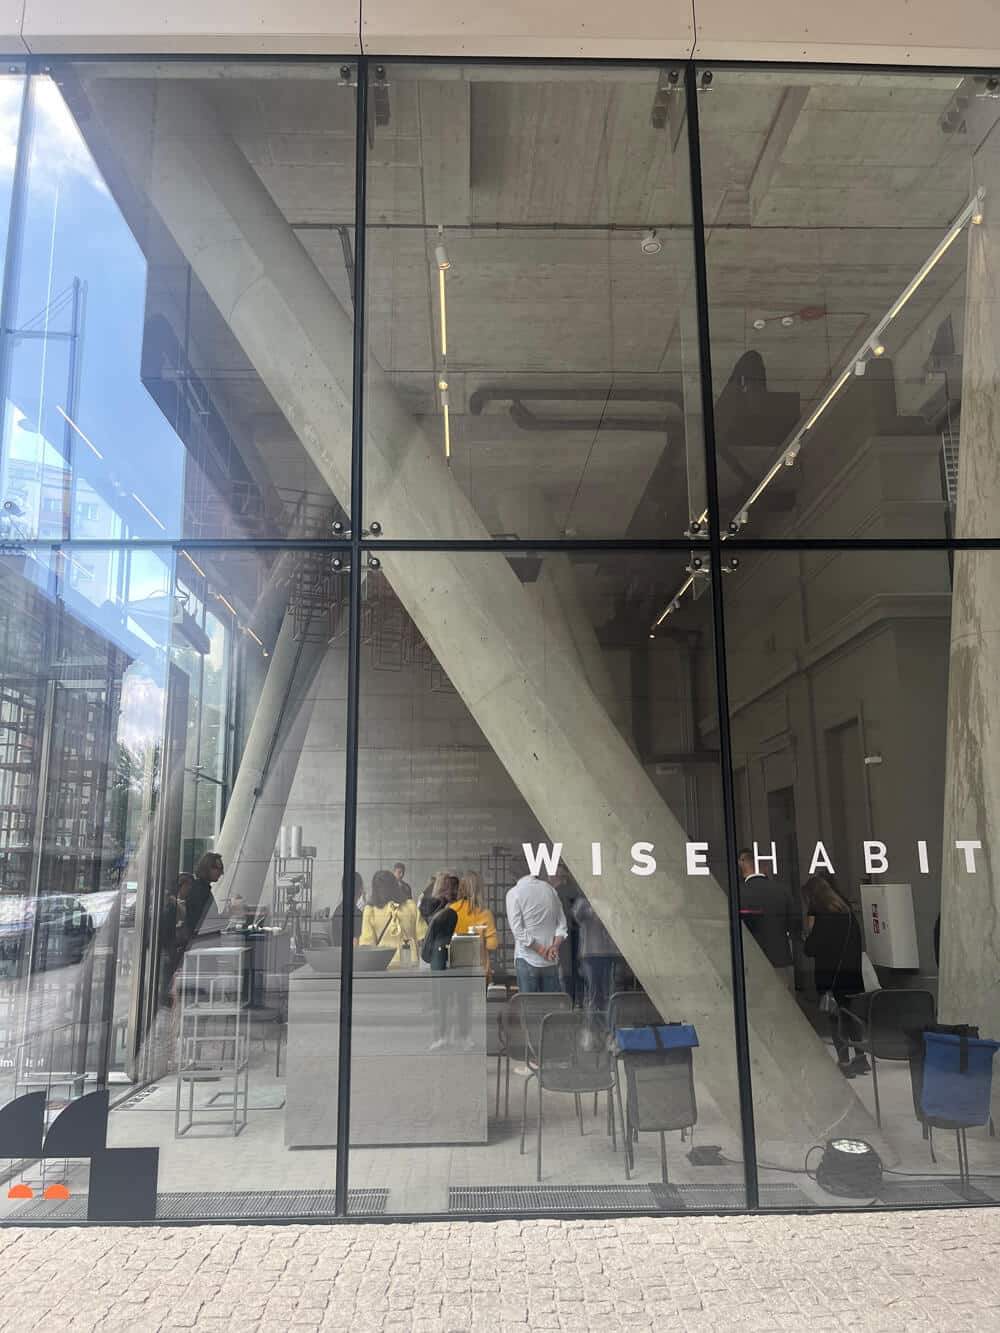 Wise Habit Multibrandowy Showroom przy ul. Żelaznej 24 w Warszawie